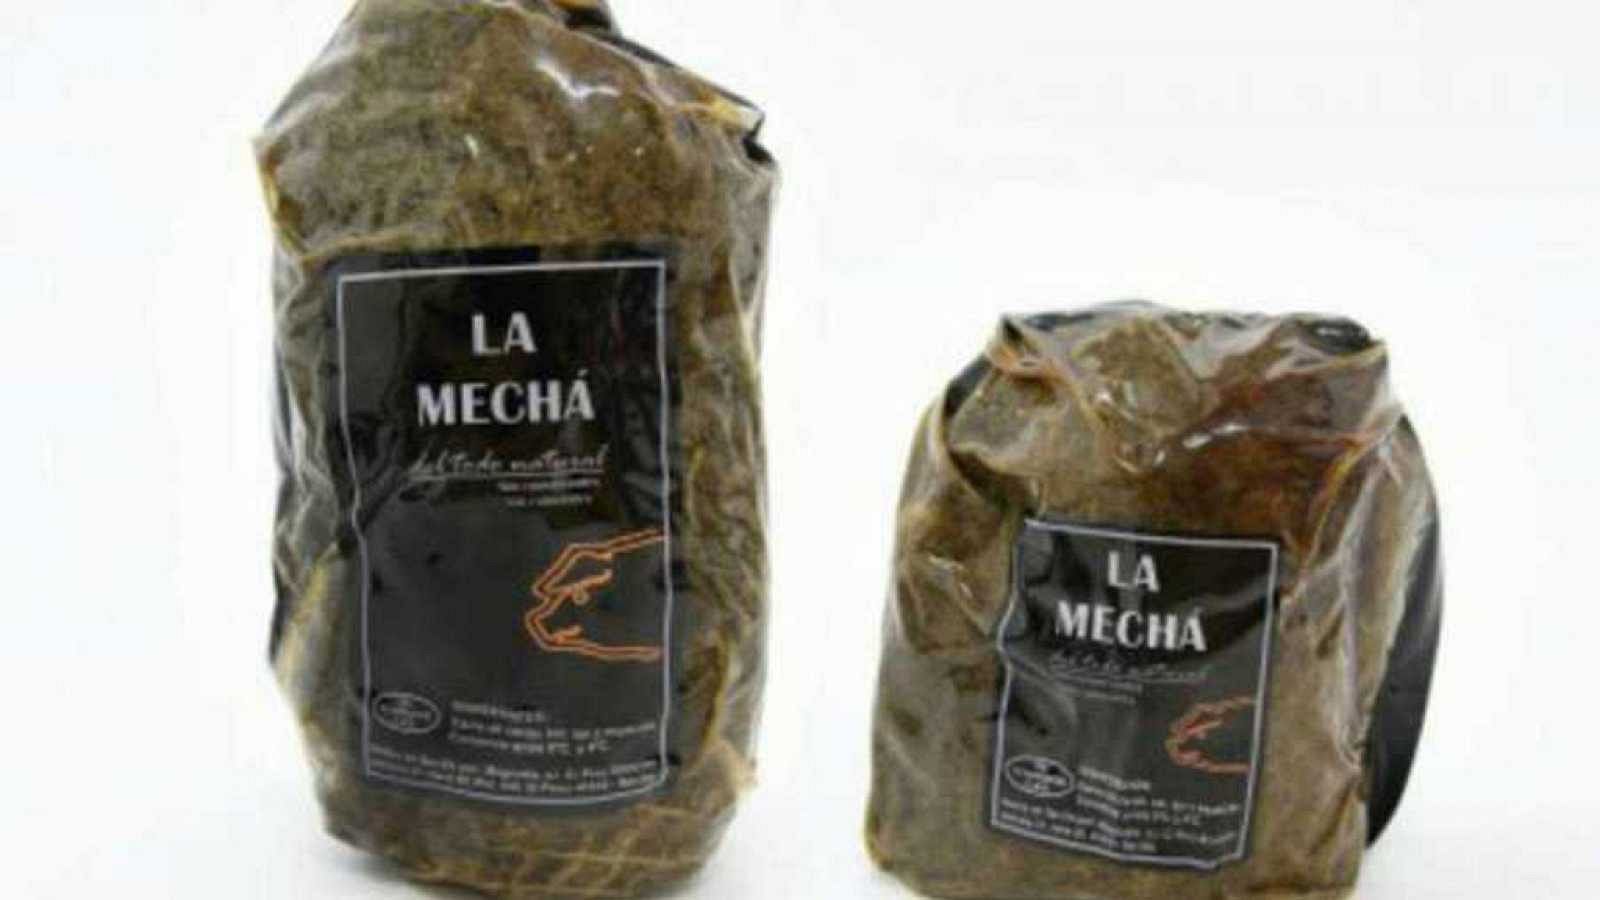 La Junta de Andalucía admite que hay carne de la marca "La Mechá" sin identificar vendida como marca blanca